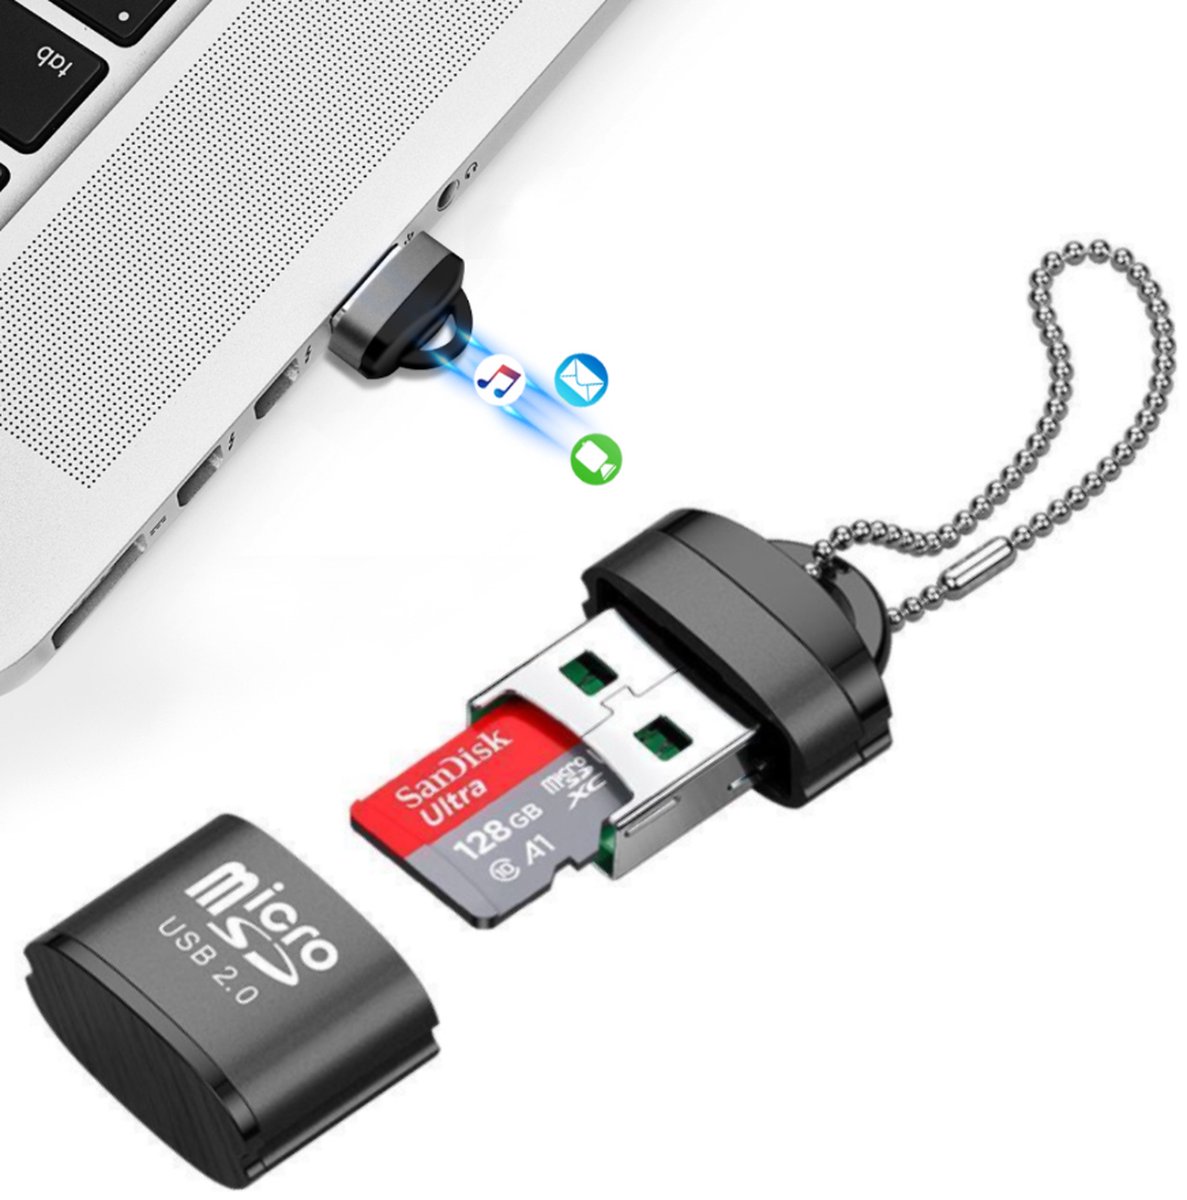 SanDisk Lecteur USB 3.0 MobileMate : meilleur prix et actualités - Les  Numériques